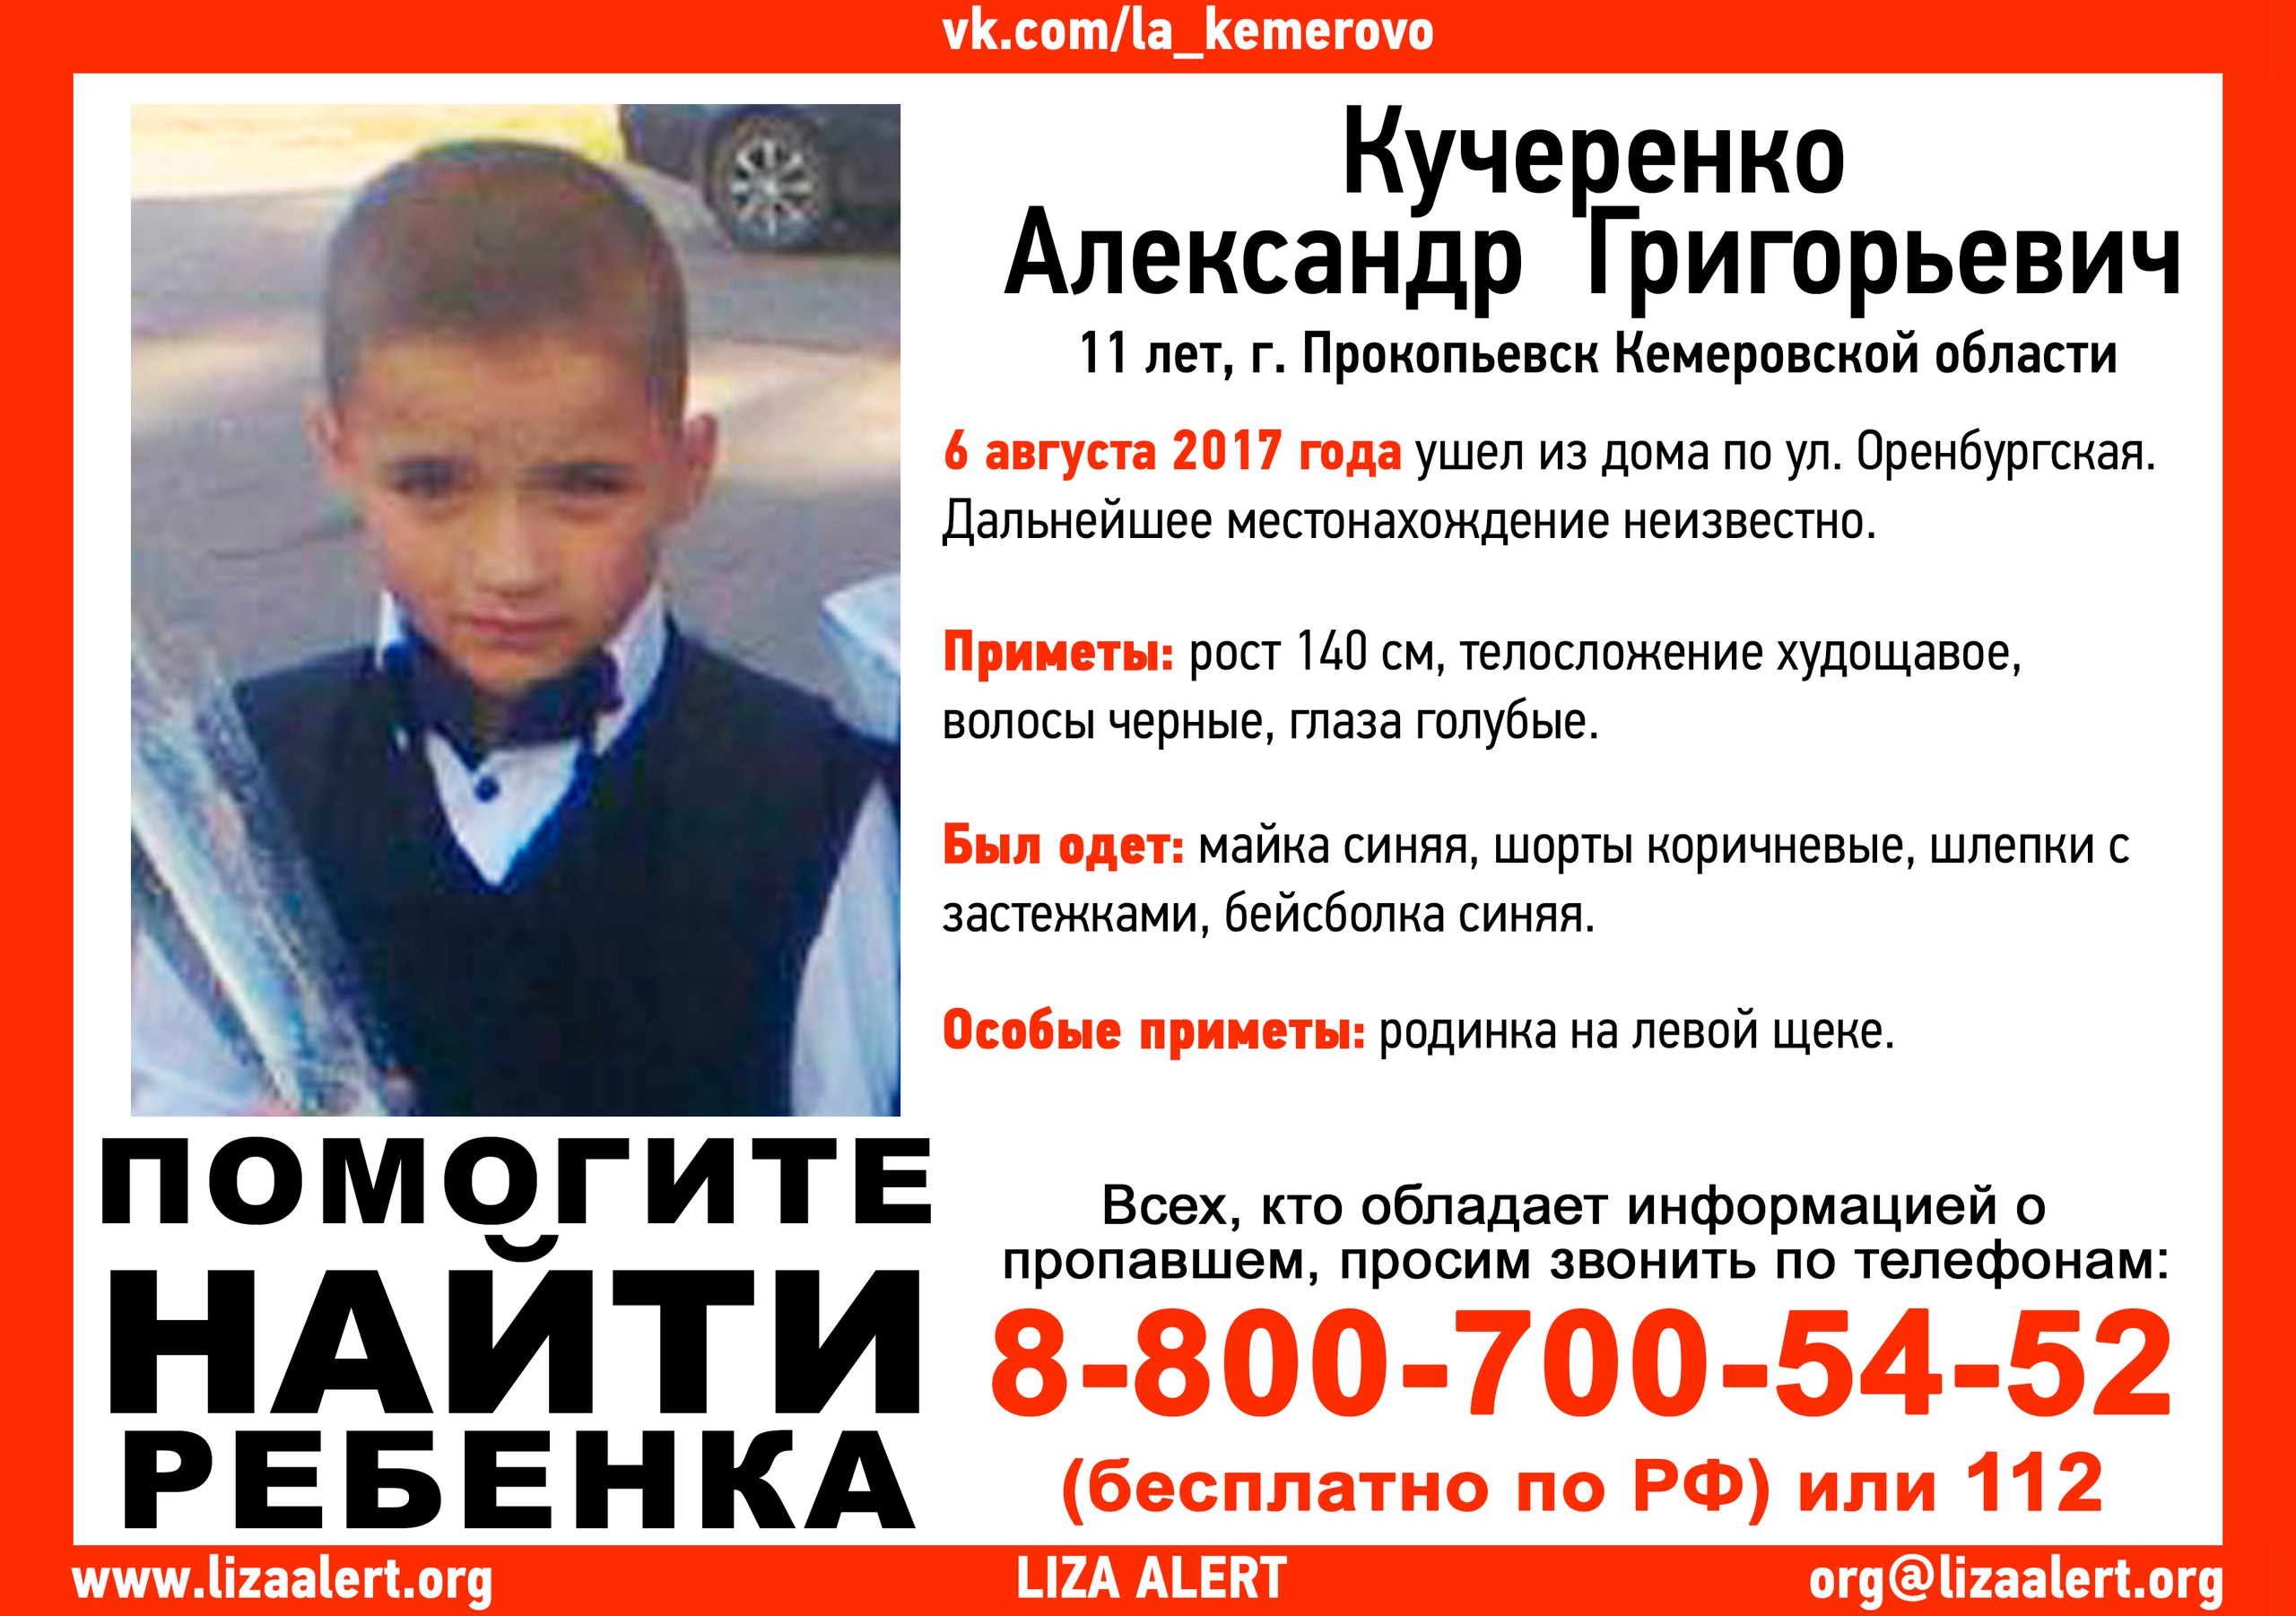 В Прокопьевске пропал 11-летний мальчик